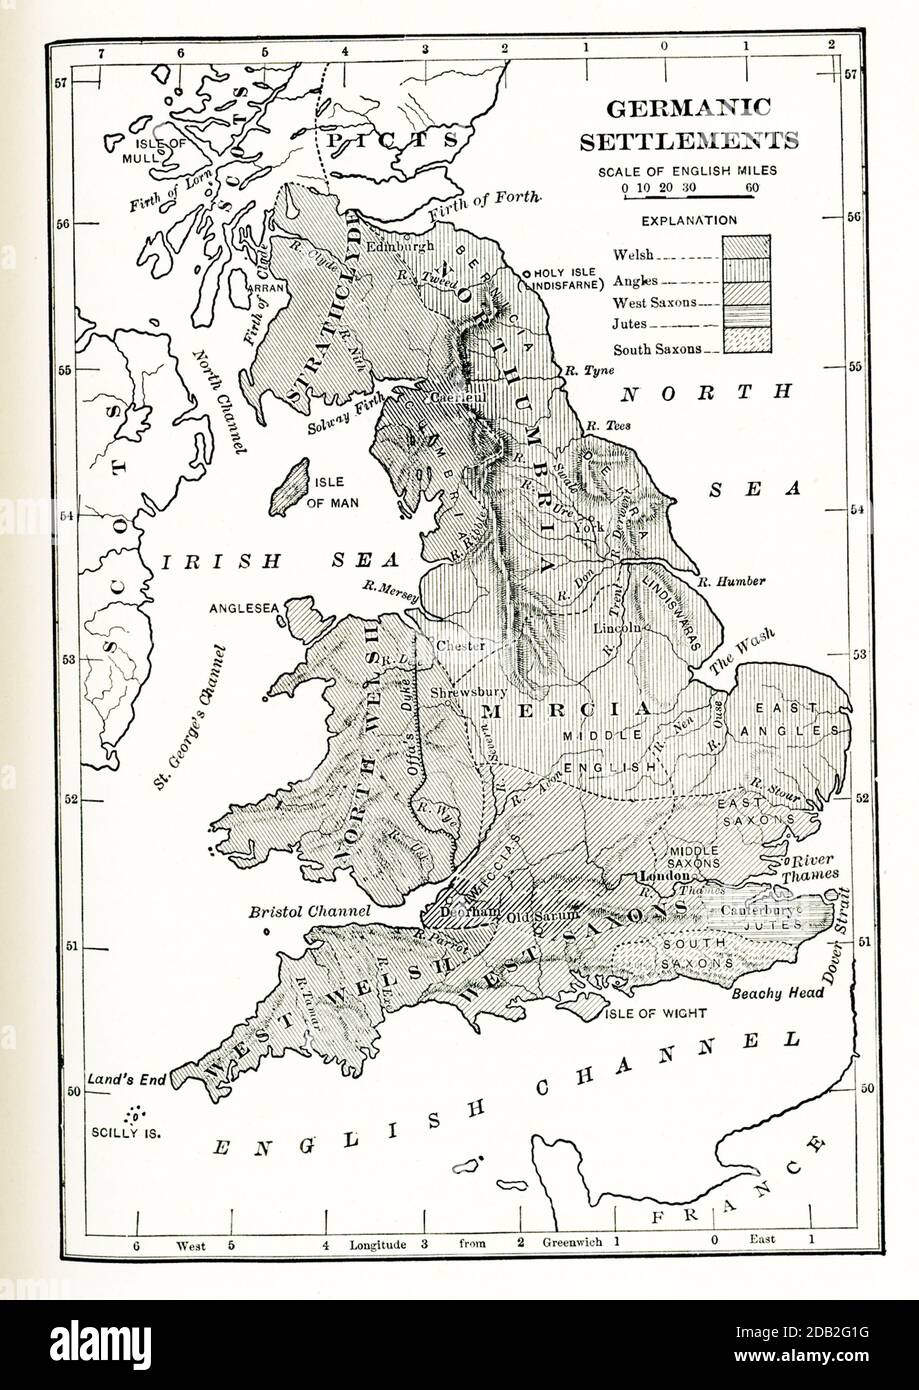 Les colonies germaniques en Angleterre. Cette carte montre les colonies germaniques en Angleterre dans les temps anciens. Les zones ombragées sont : gallois, angles, Saxons de l'Ouest, Jutes, Saxons du Sud. Banque D'Images